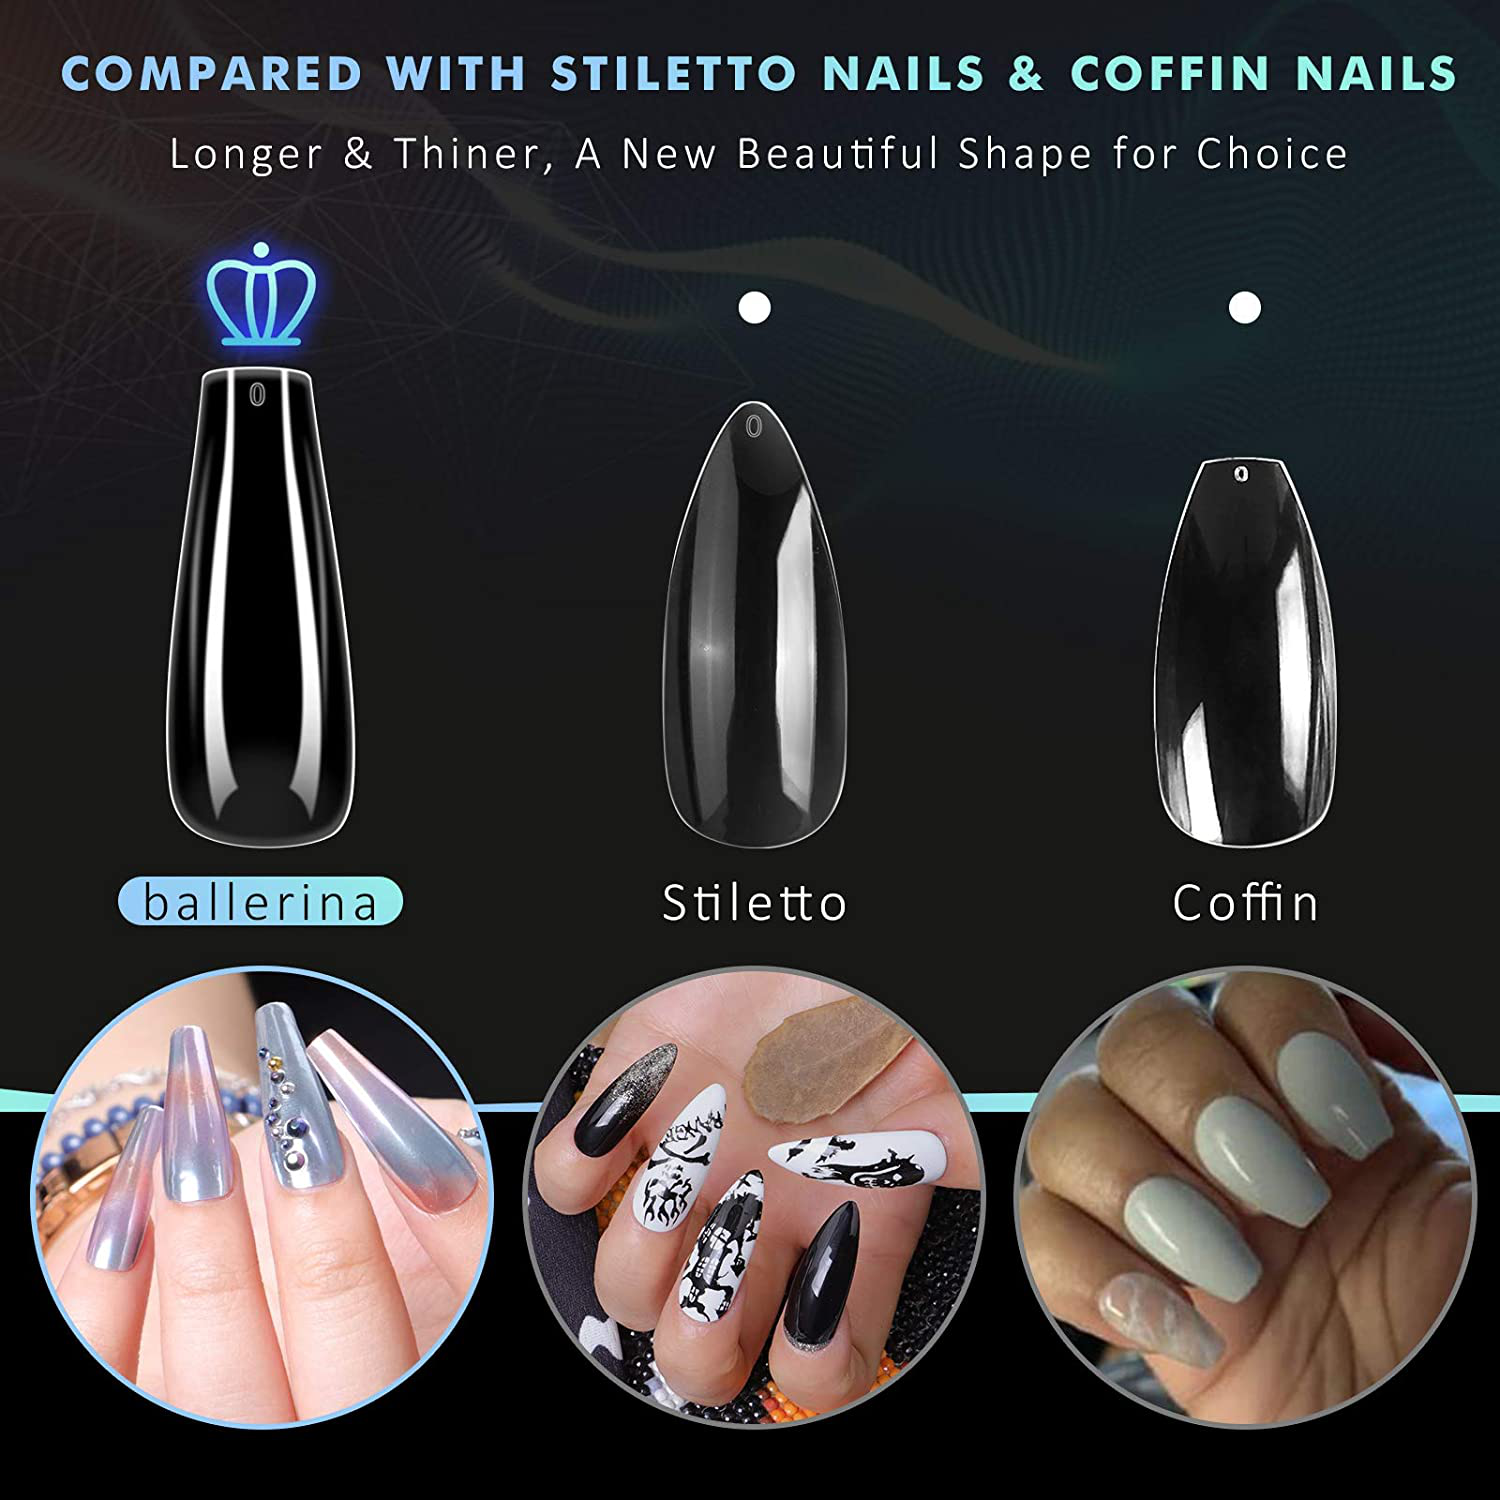 Coffin Nails Long Fake Nails - Clear Acrylic Nails Coffin Shaped Ballerina Nails Tips 500Pcs Full Cover False Nail with 4Pcs Nail Glues and 1Pcs Nail File, 10 Sizes